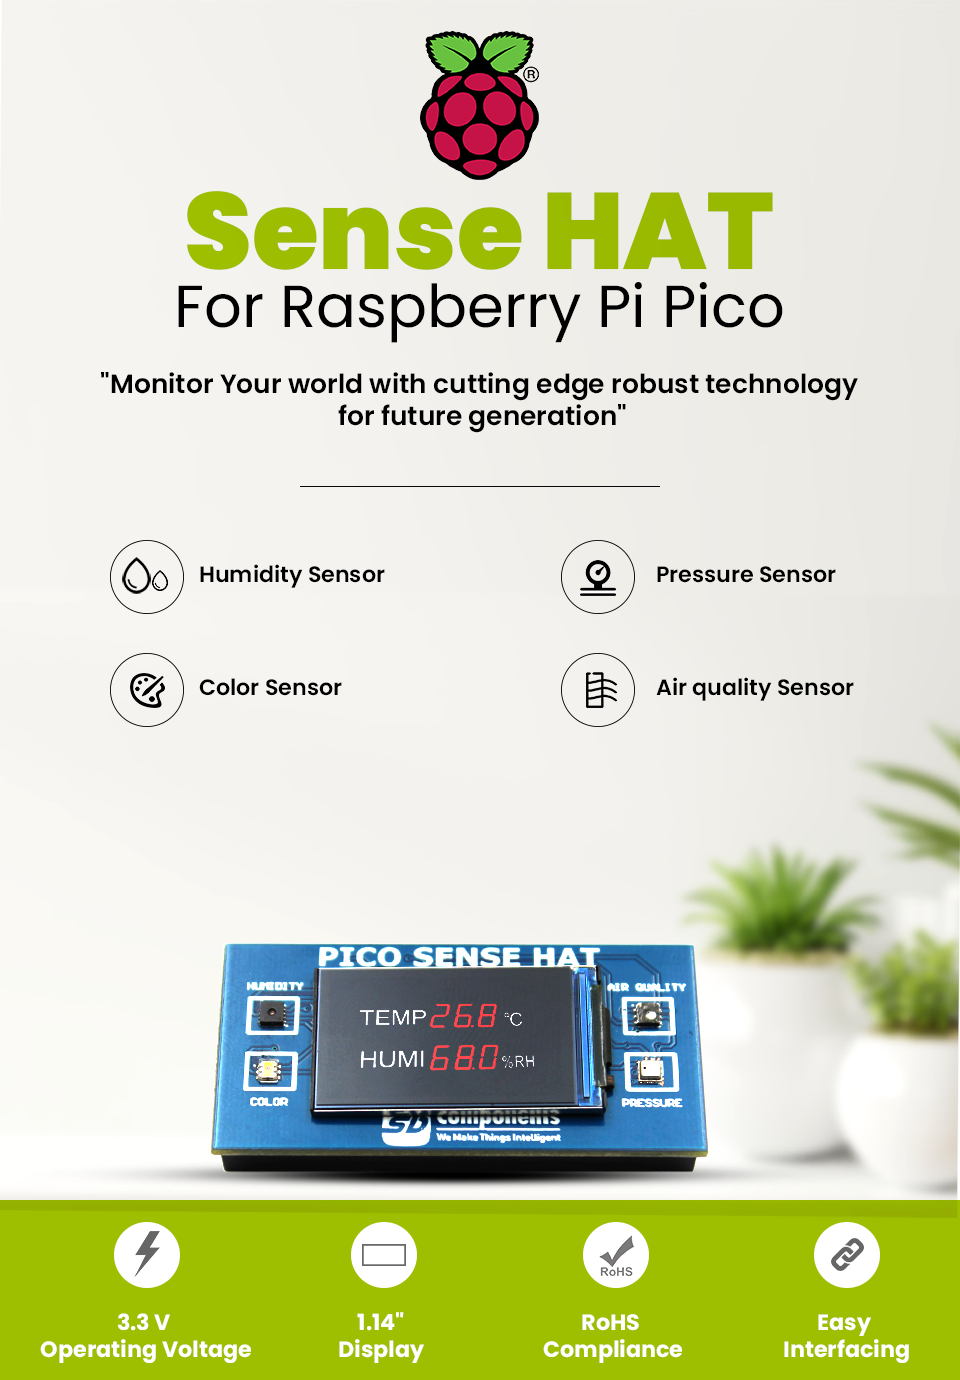 Raspberry Pi Pico Sense HAT